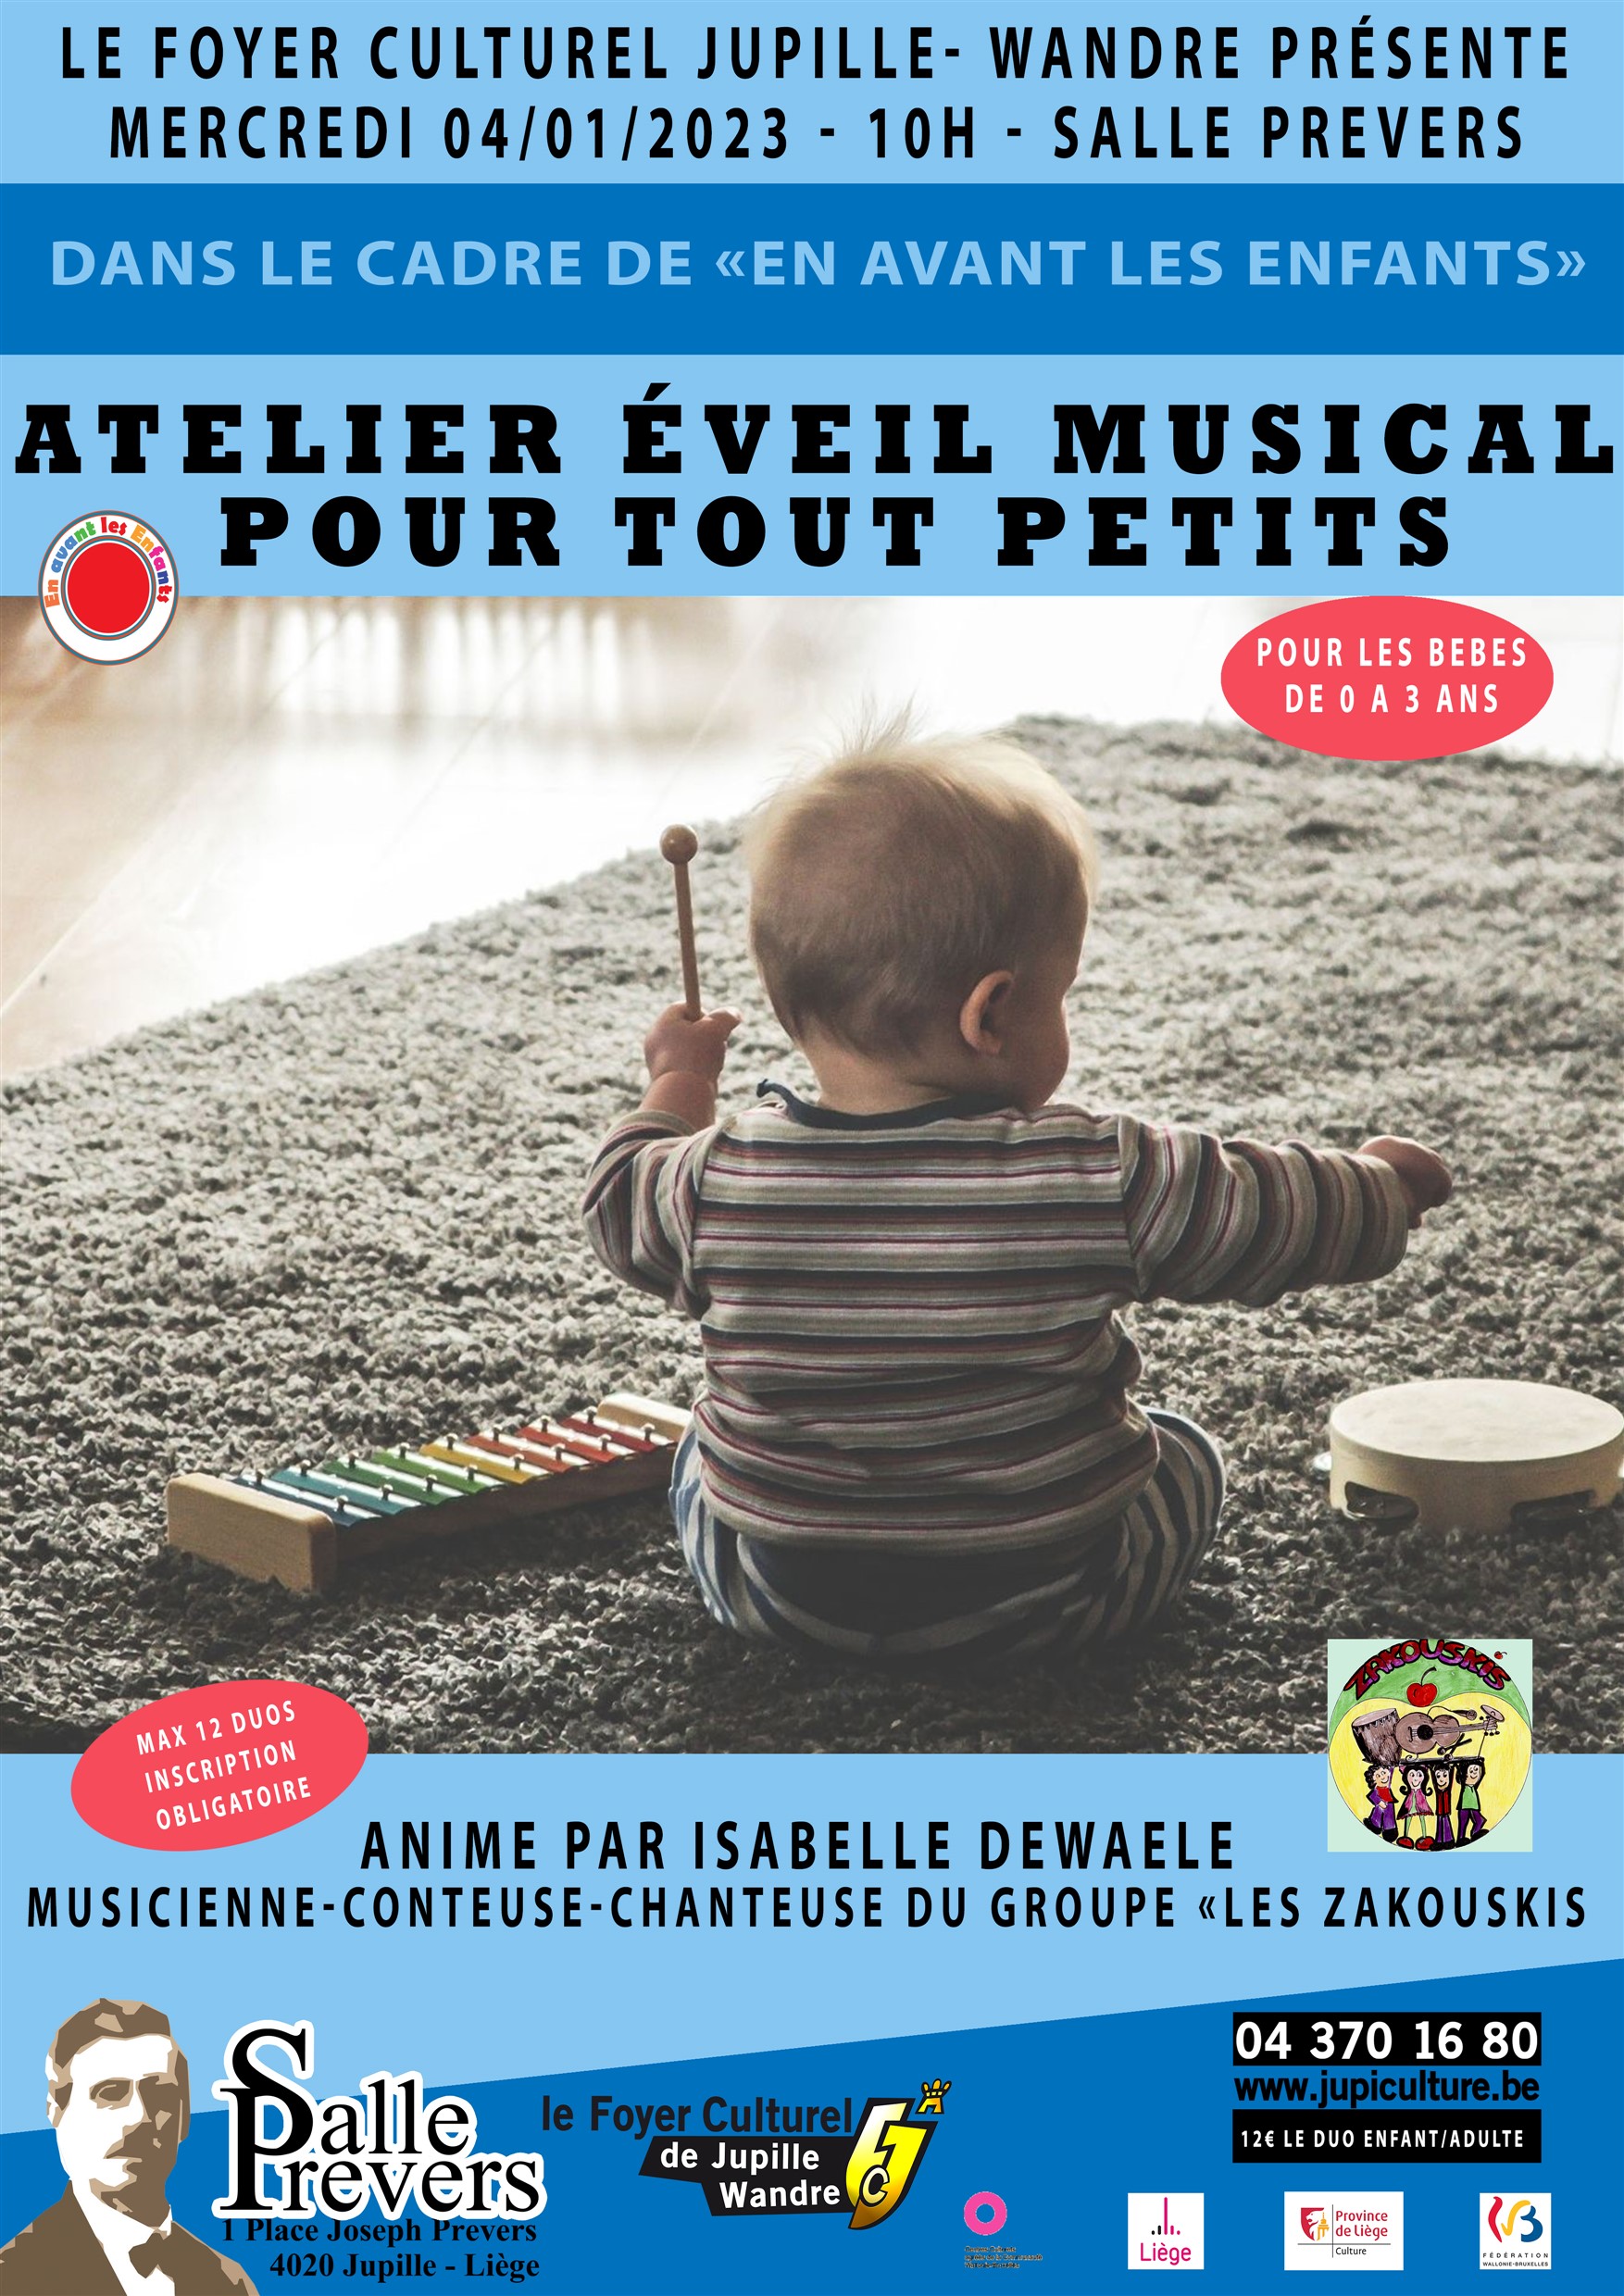 ATELIER ÉVEIL MUSICAL POUR TOUT PETITS à la Salle J Prévers de JUPILLE